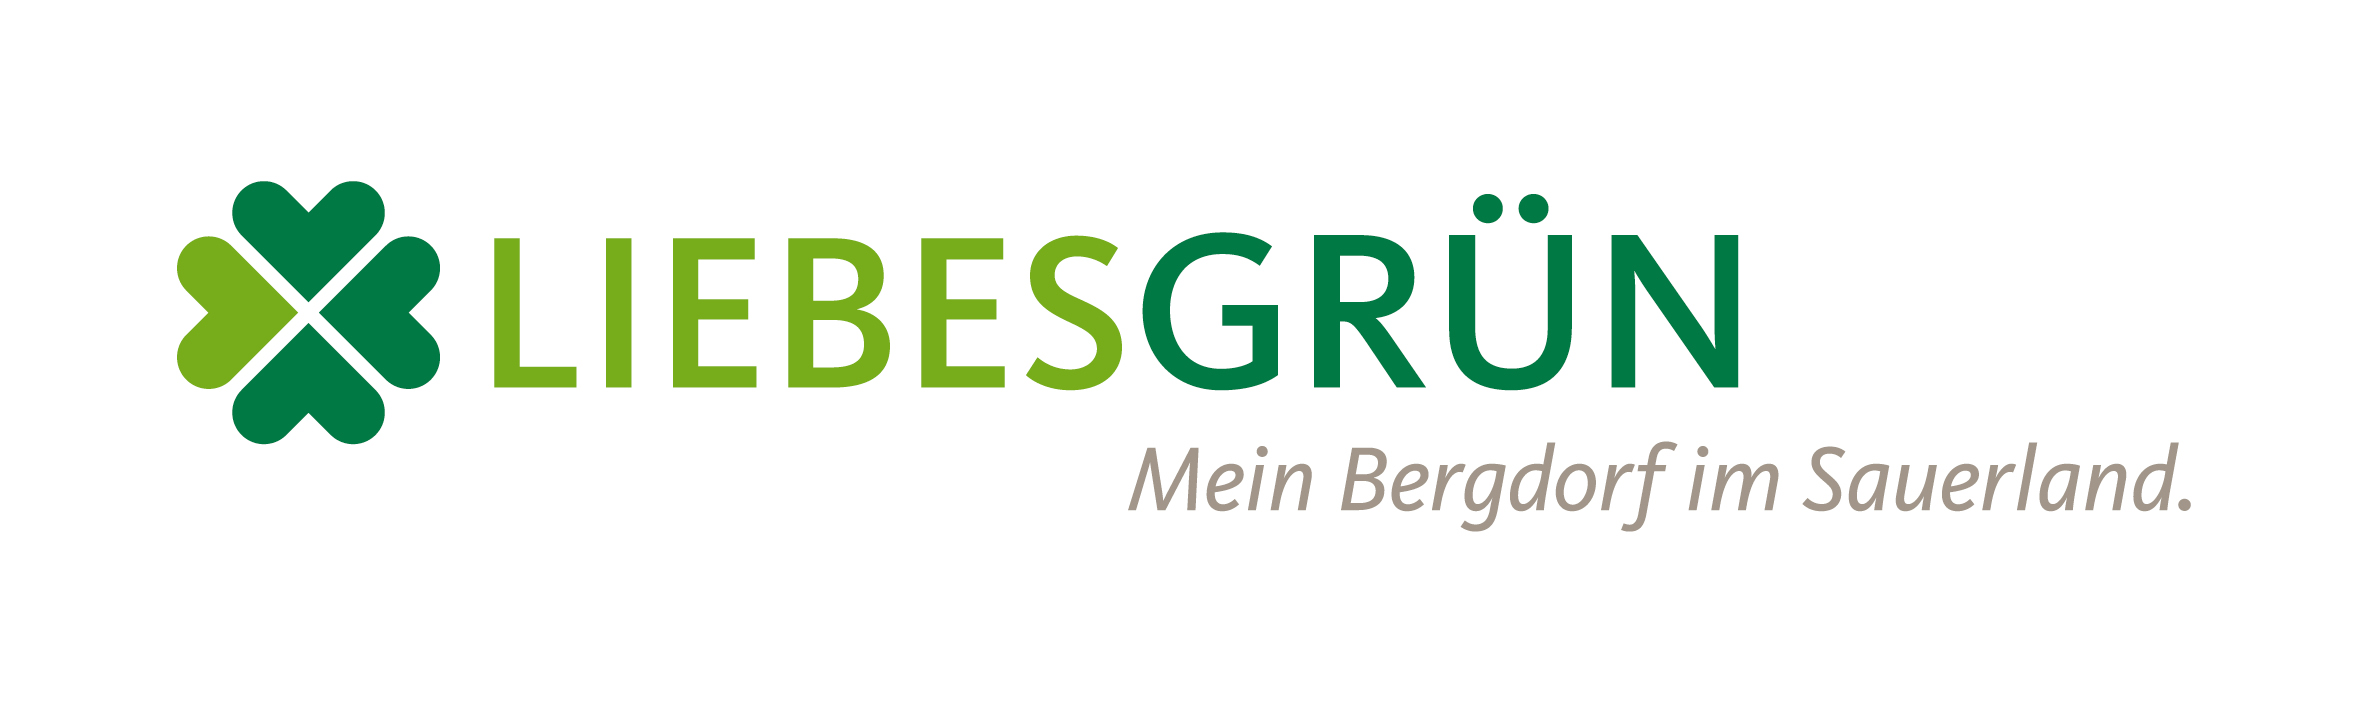 LiebesGrün-Logo